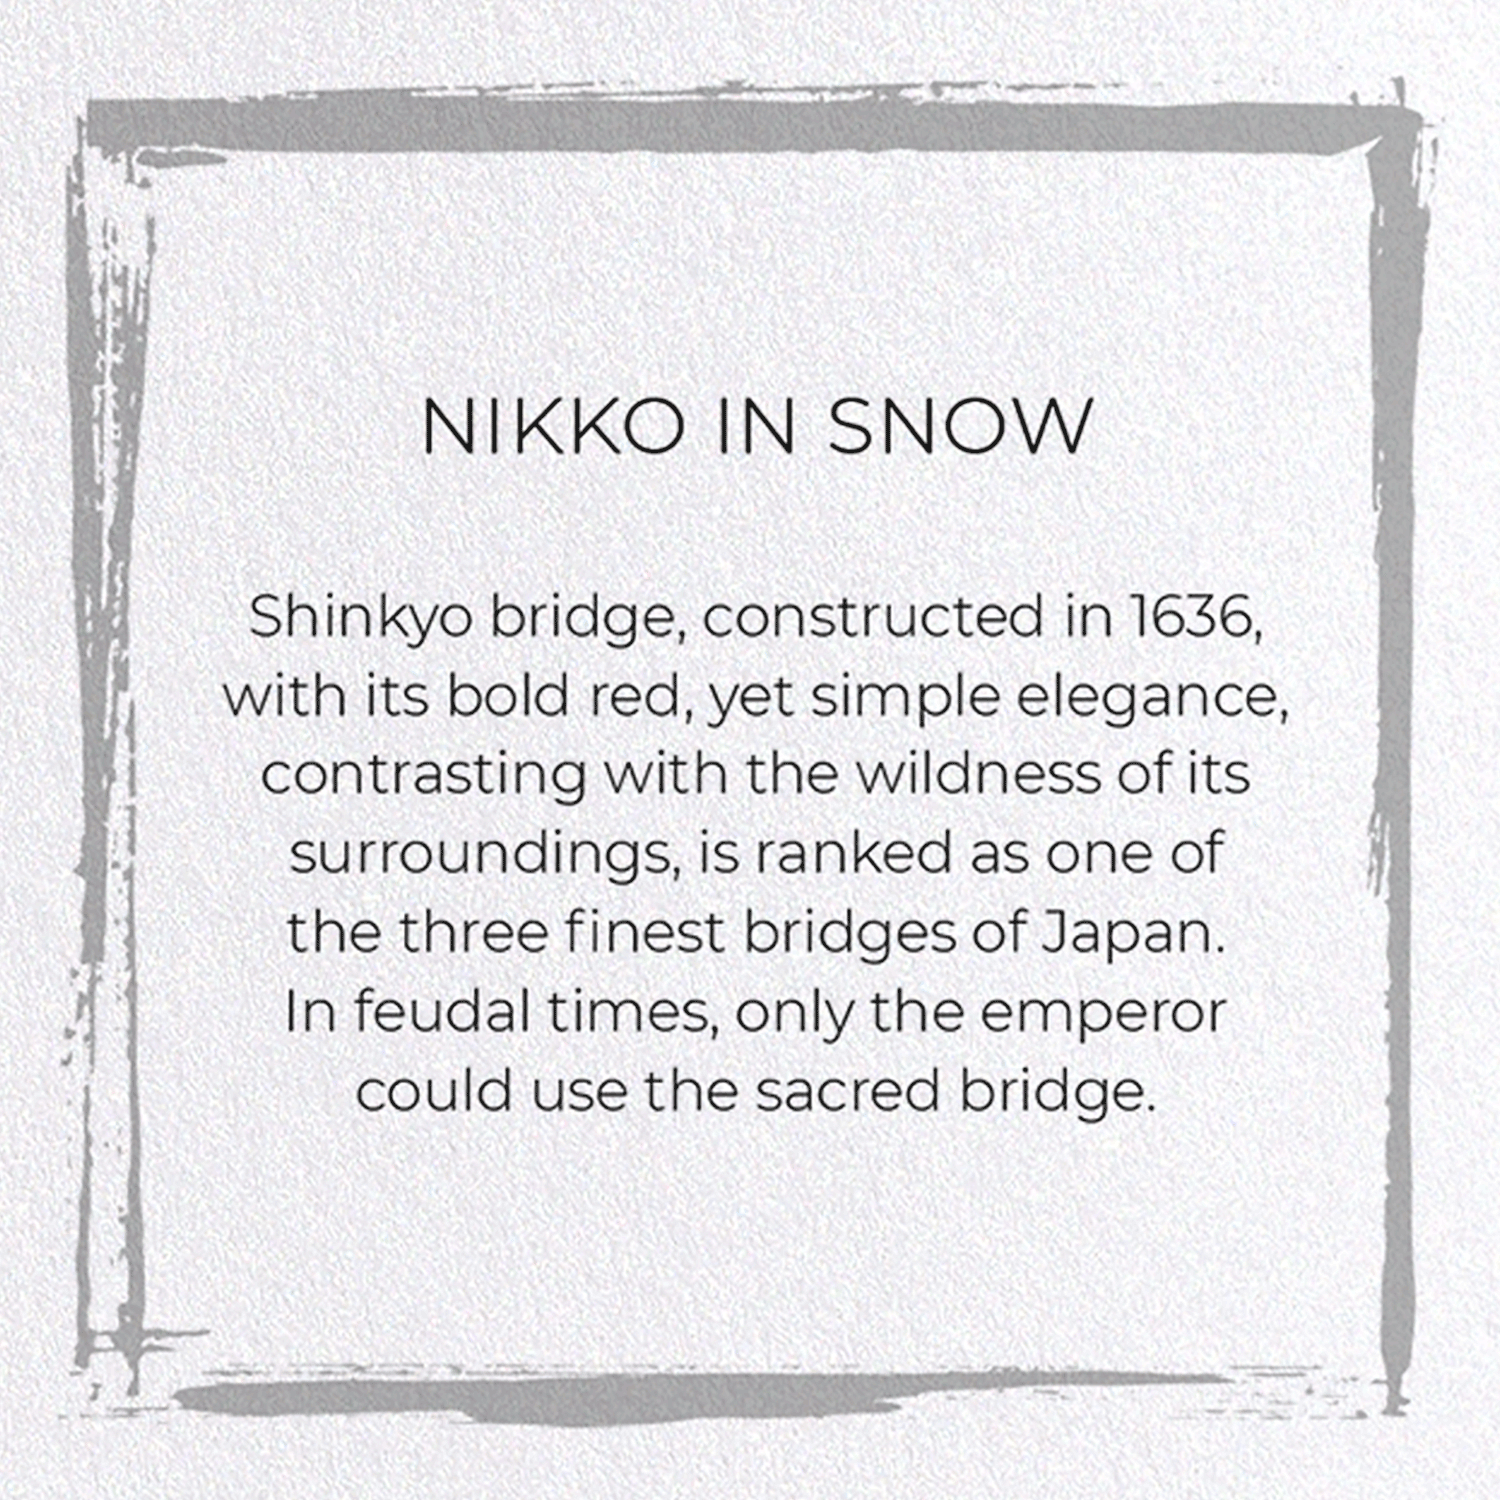 NIKKO IN SNOW